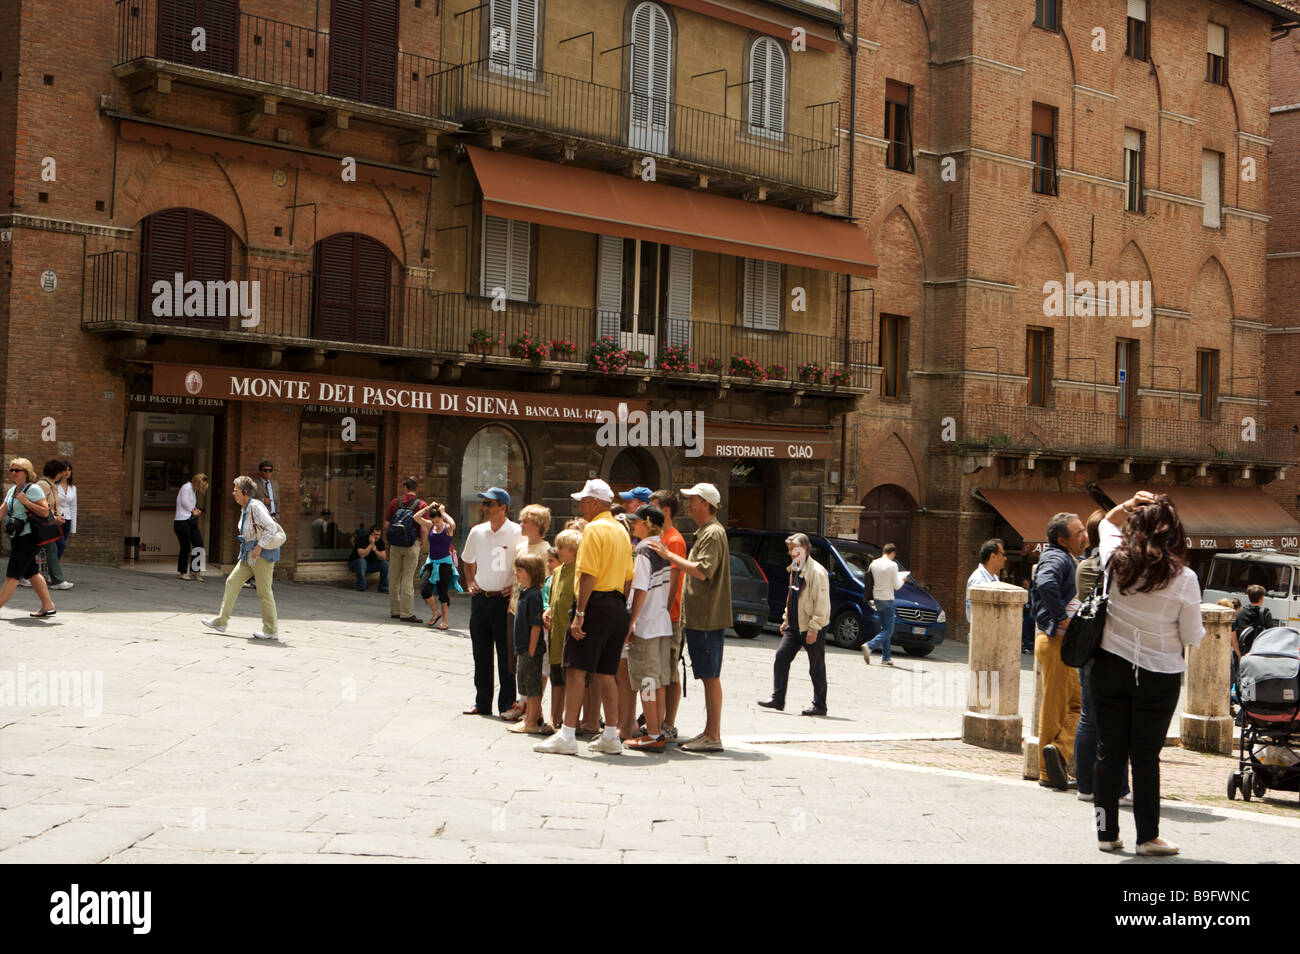 Les touristes de prendre des photos sur la place de Campo de Sienne, Italie Banque D'Images